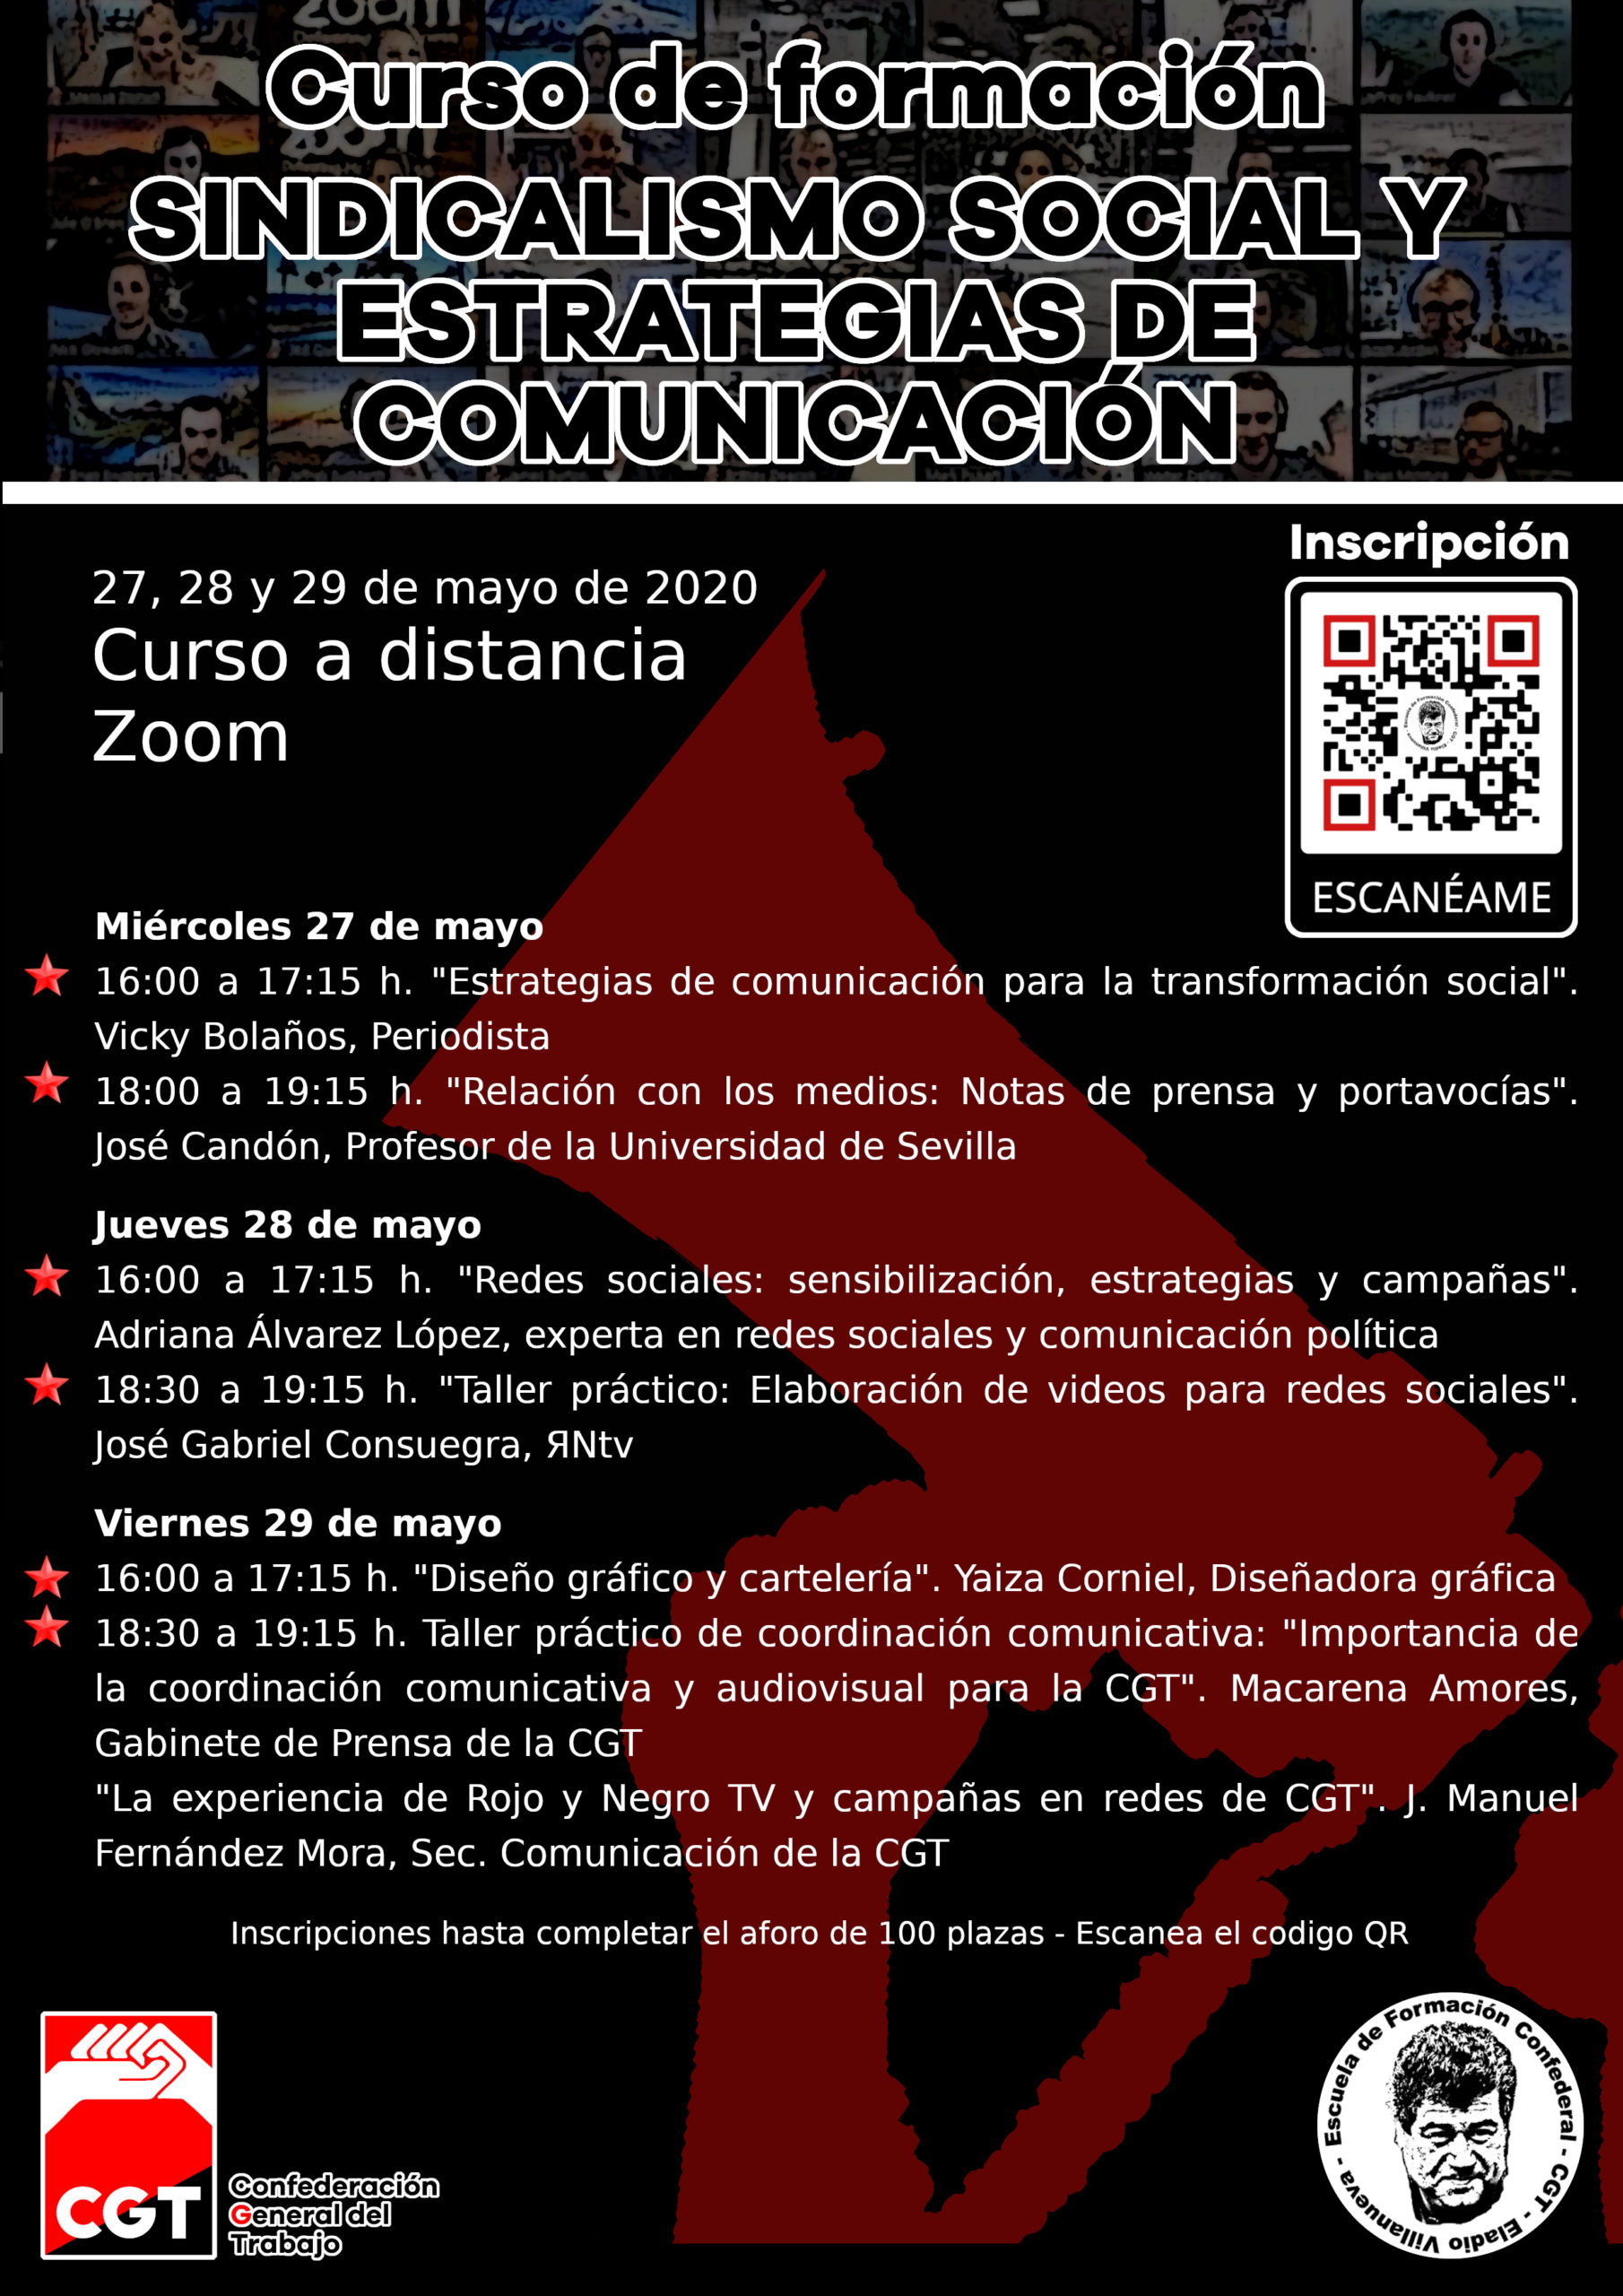 Jornadas formativas sobre sindicalismo social y estrategias de comunicación 27, 28 y 29 mayo 2020